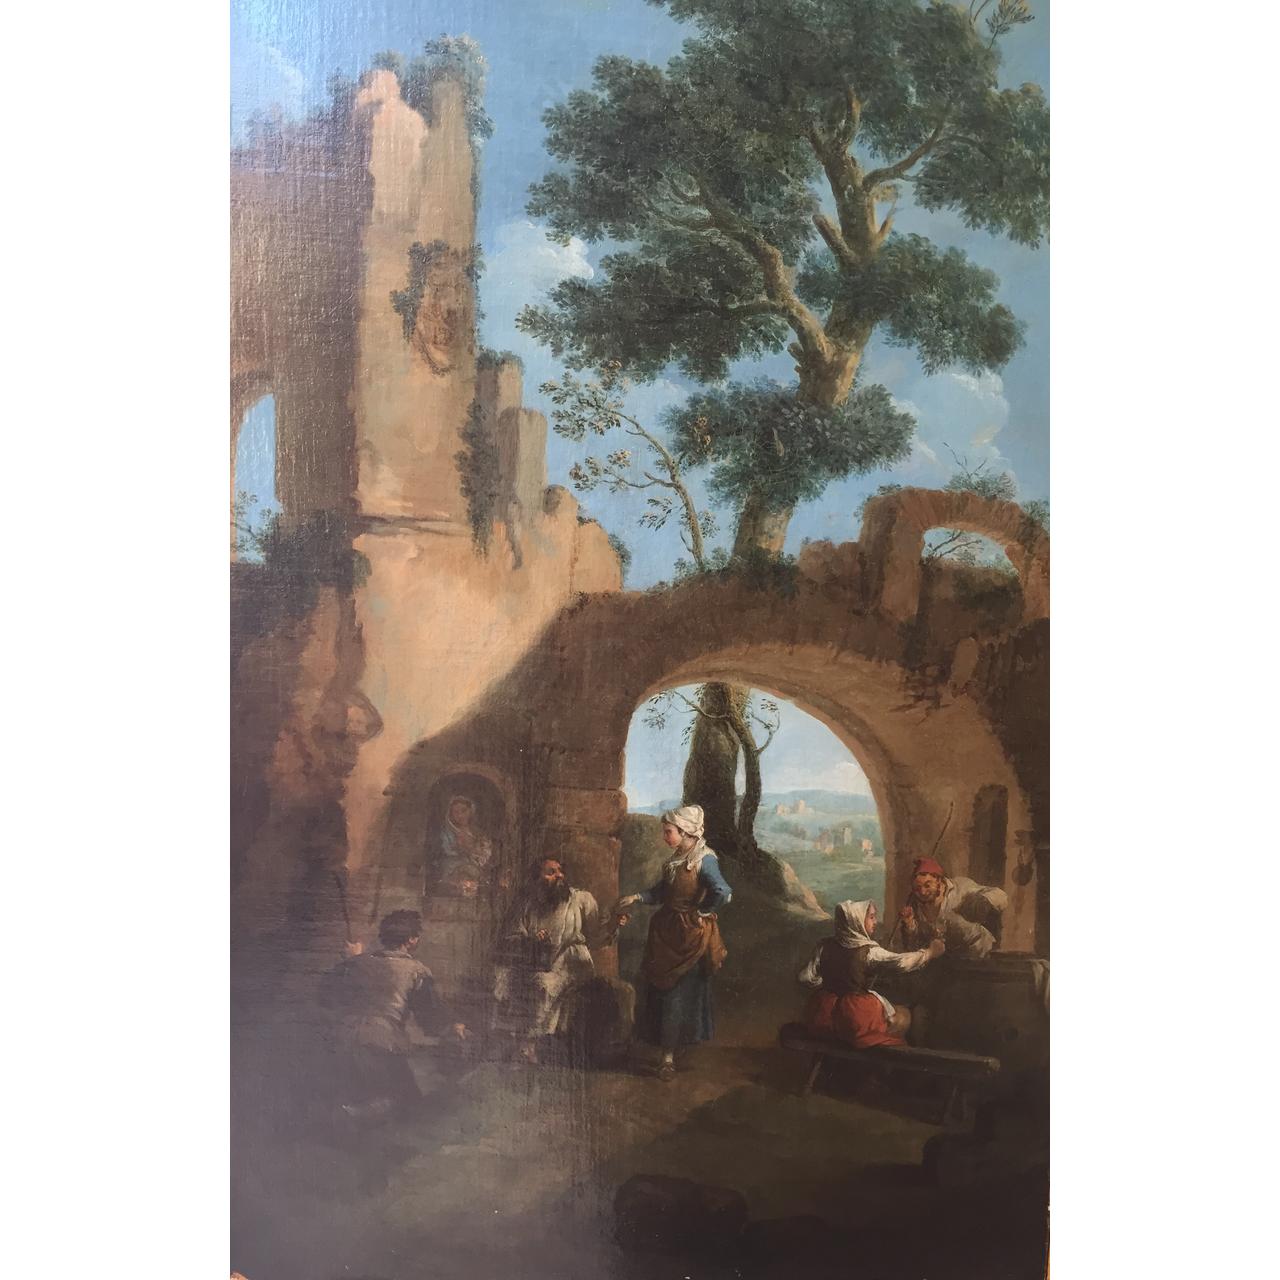 Dipinto: Peasant at an inn